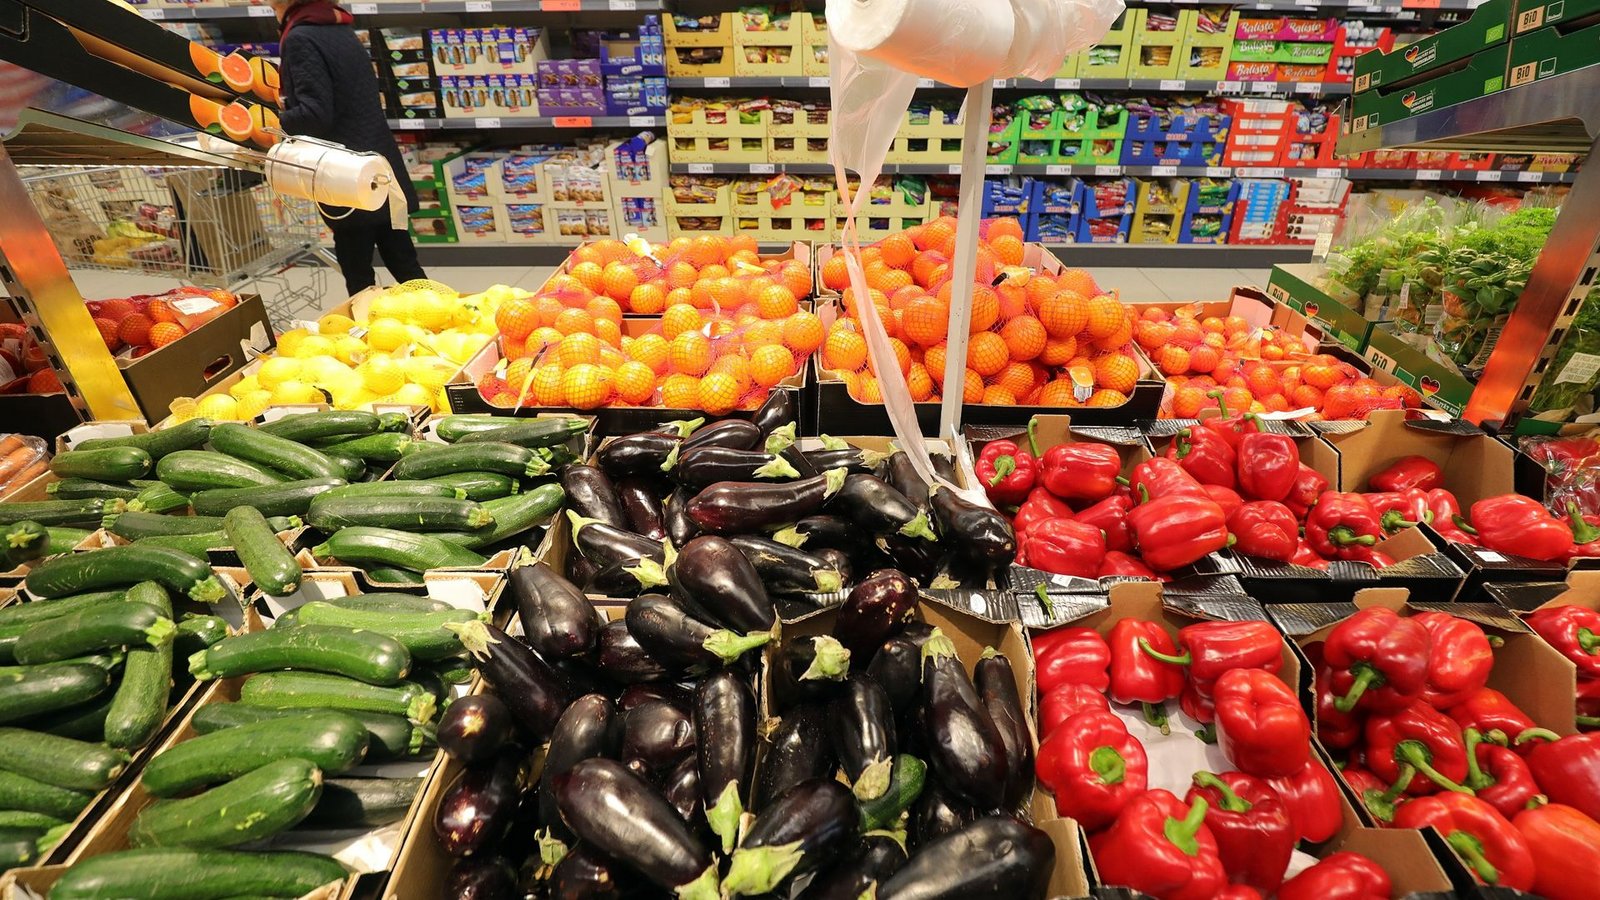 Obst- und Gemüse im Supermarkt. Mit einer flexitarischen Ernährung mit begrenztem Konsum von tierischen Produkten könnte unser Biodiversitäts-Fußabdruck bereits spürbar verringert werden - bei konsequenter vegetarischer oder veganer Ernährung noch deutlich stärker.Foto: Wolfgang Kumm/dpa